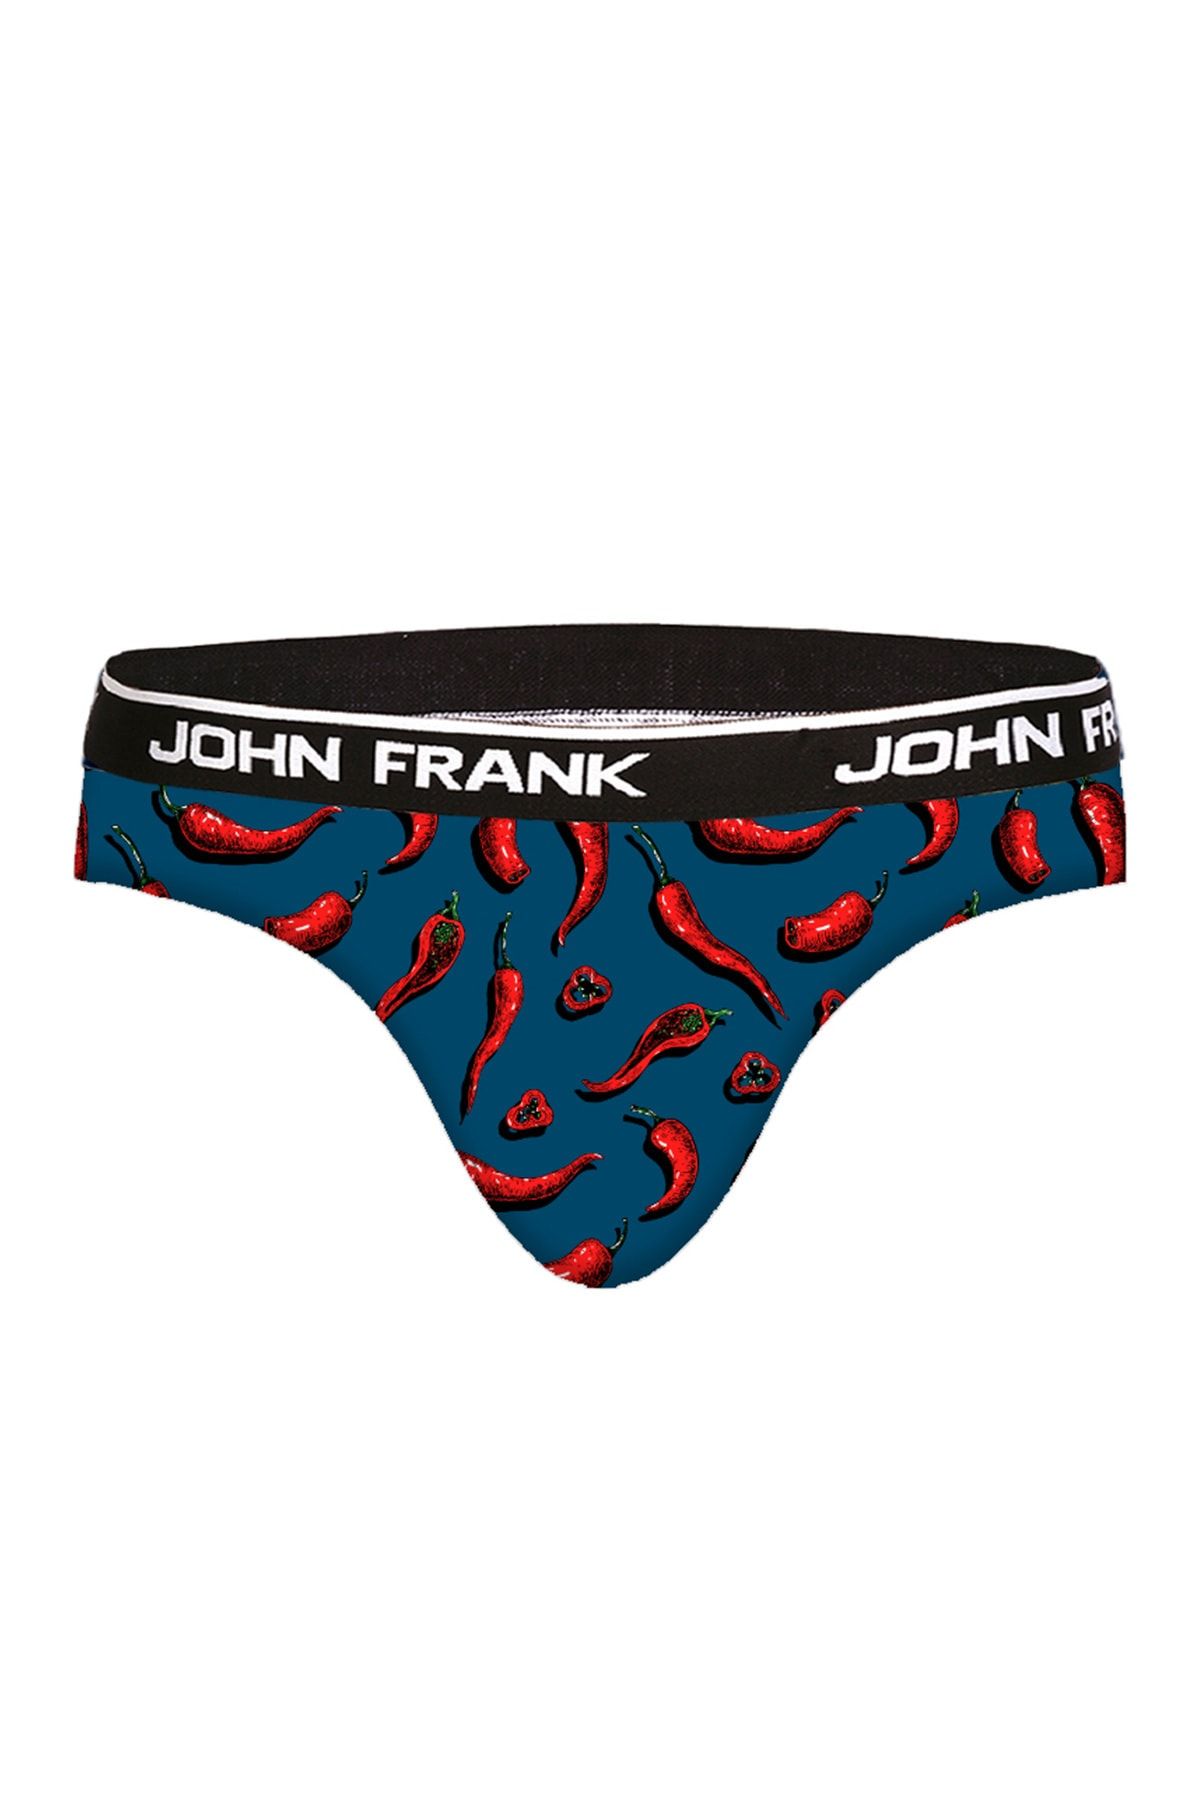 John Frank Erkek So Hot Desenli Slip